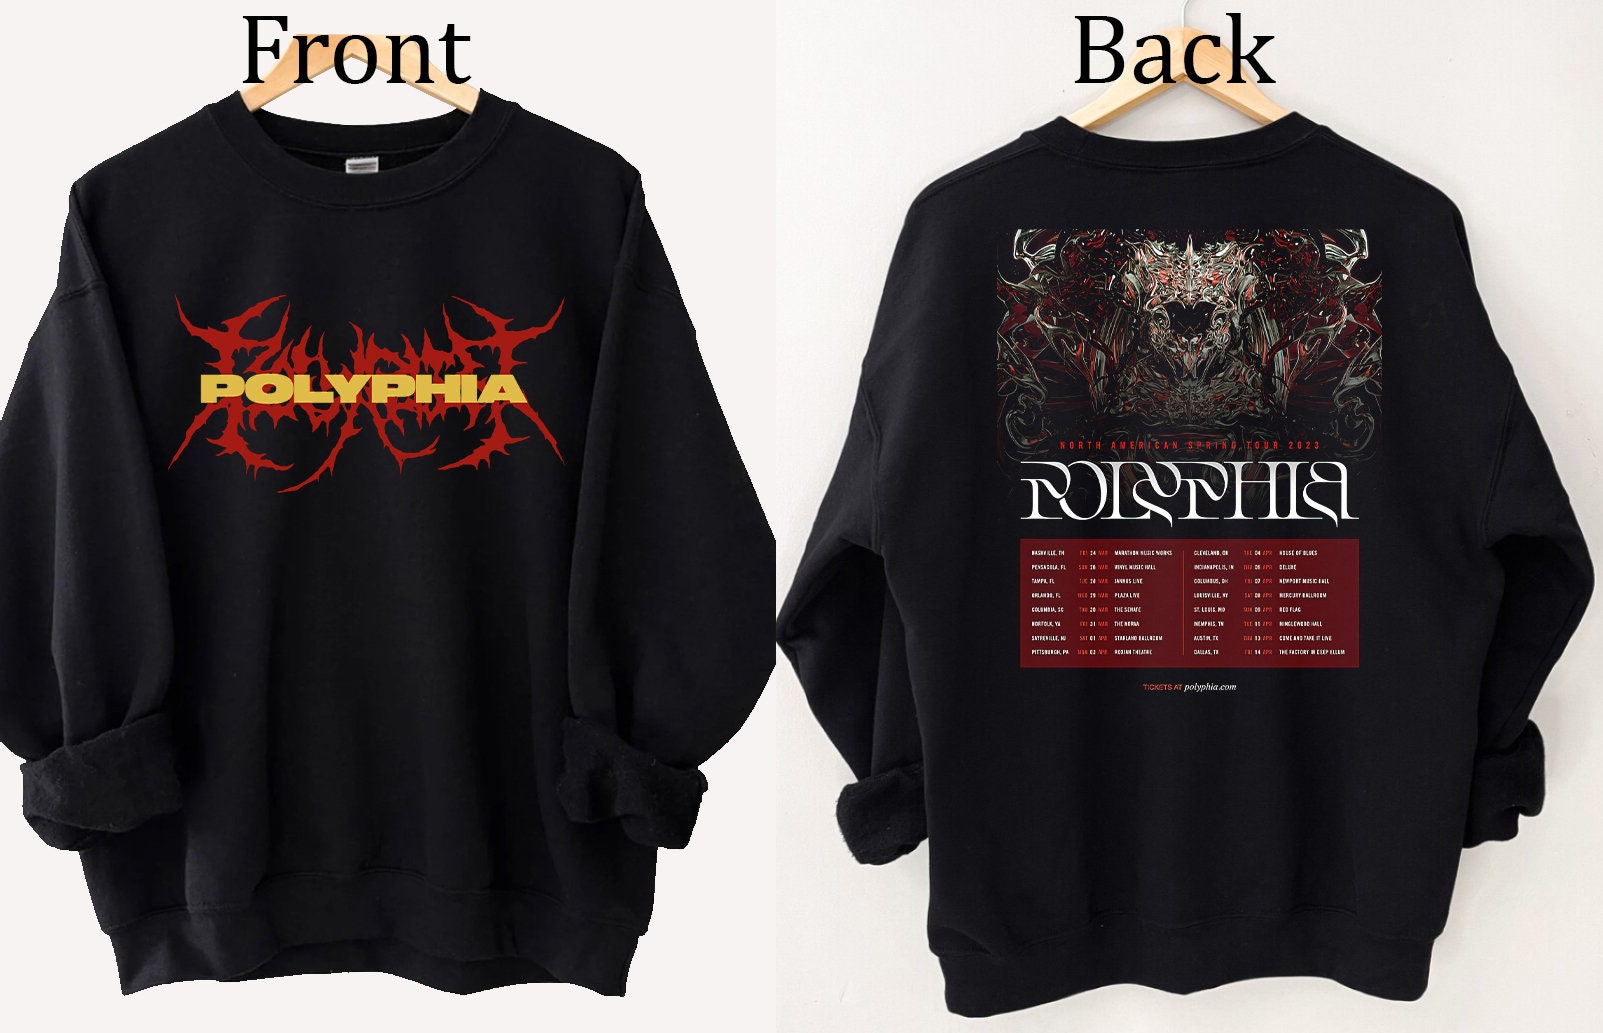 Polyphia Spring Tour Shirt, Polyphia North America Tour, Polyphia Rock Tour Shirt